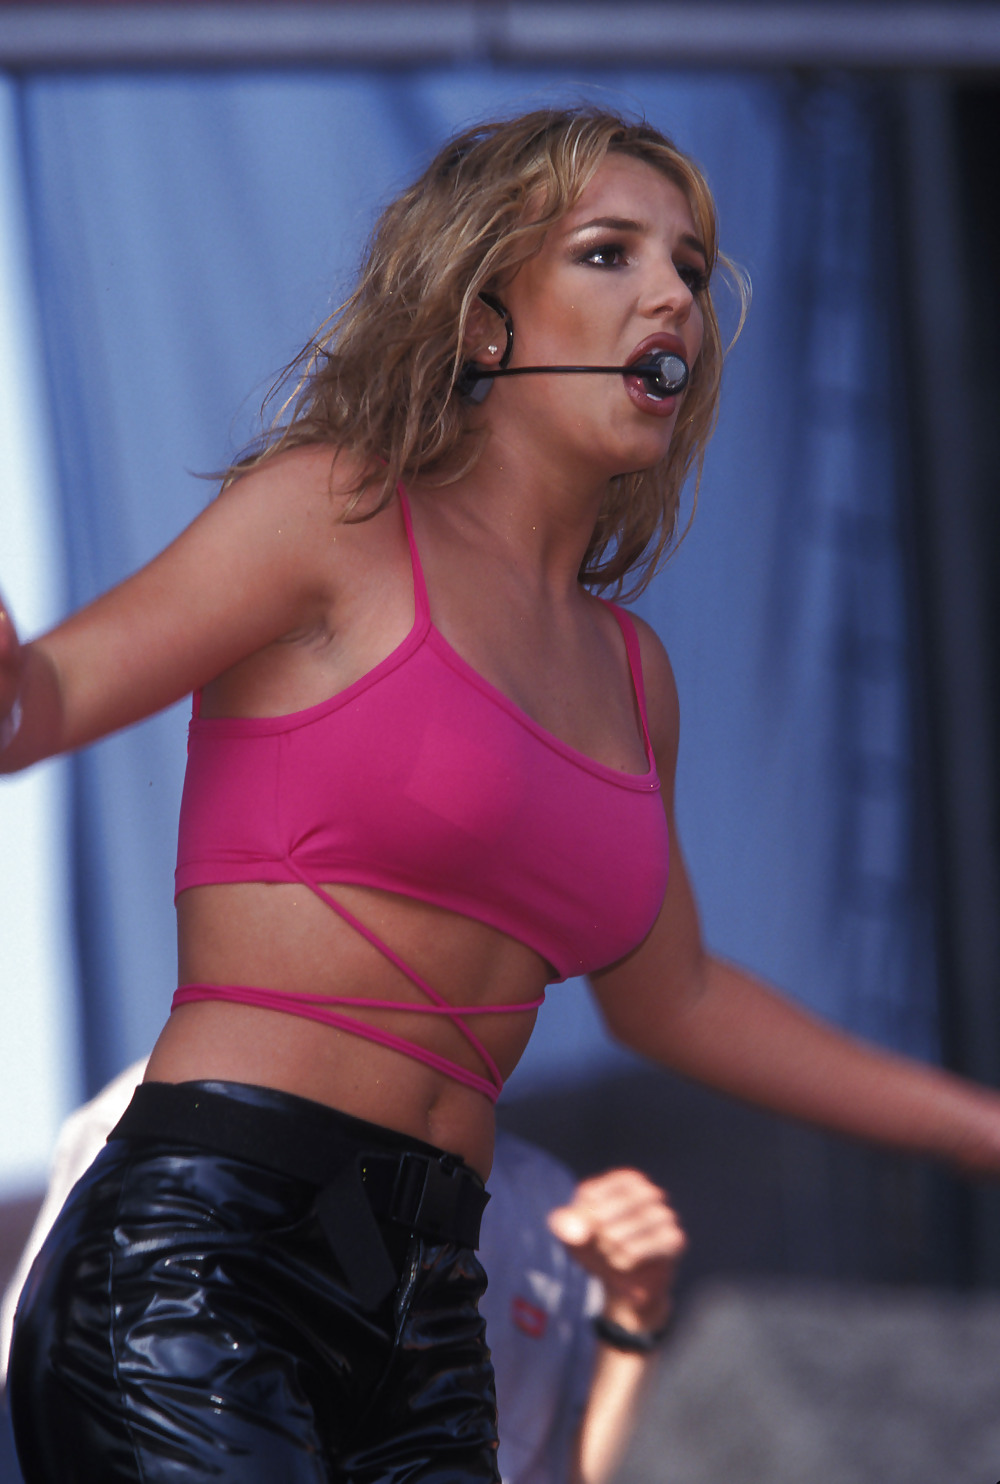 Britney Spears Wango Tango 1999 Pic Sexy #19341977